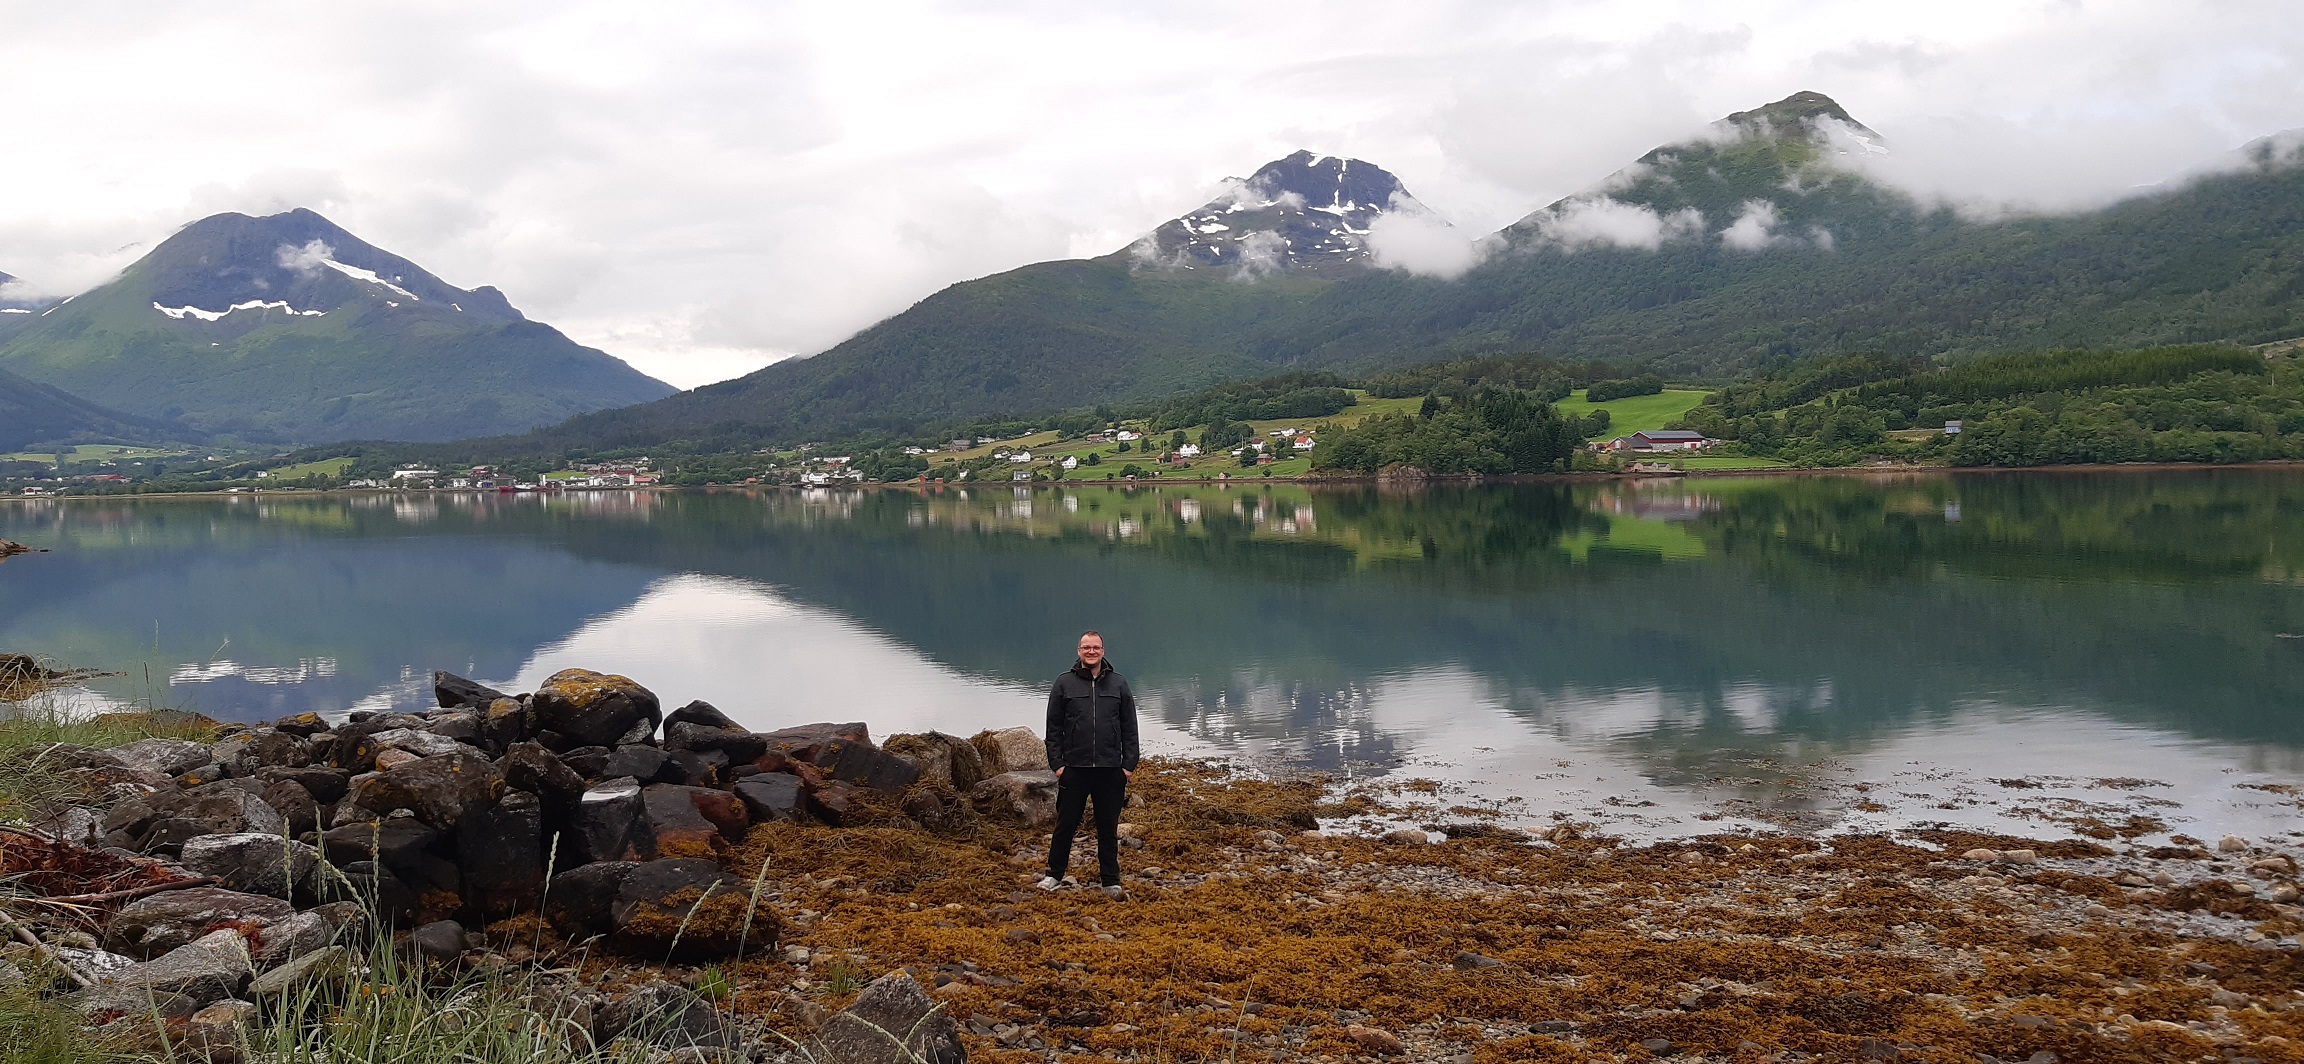 Boldog ember egy fjord partján. Itt is van dagály, olyankor a házig mászott ki a víz. Mivel mindenhonnan ömlik bele az édesvíz, megkóstoltuk a fjordot is, és tényleg csak enyhén sós a part közelében